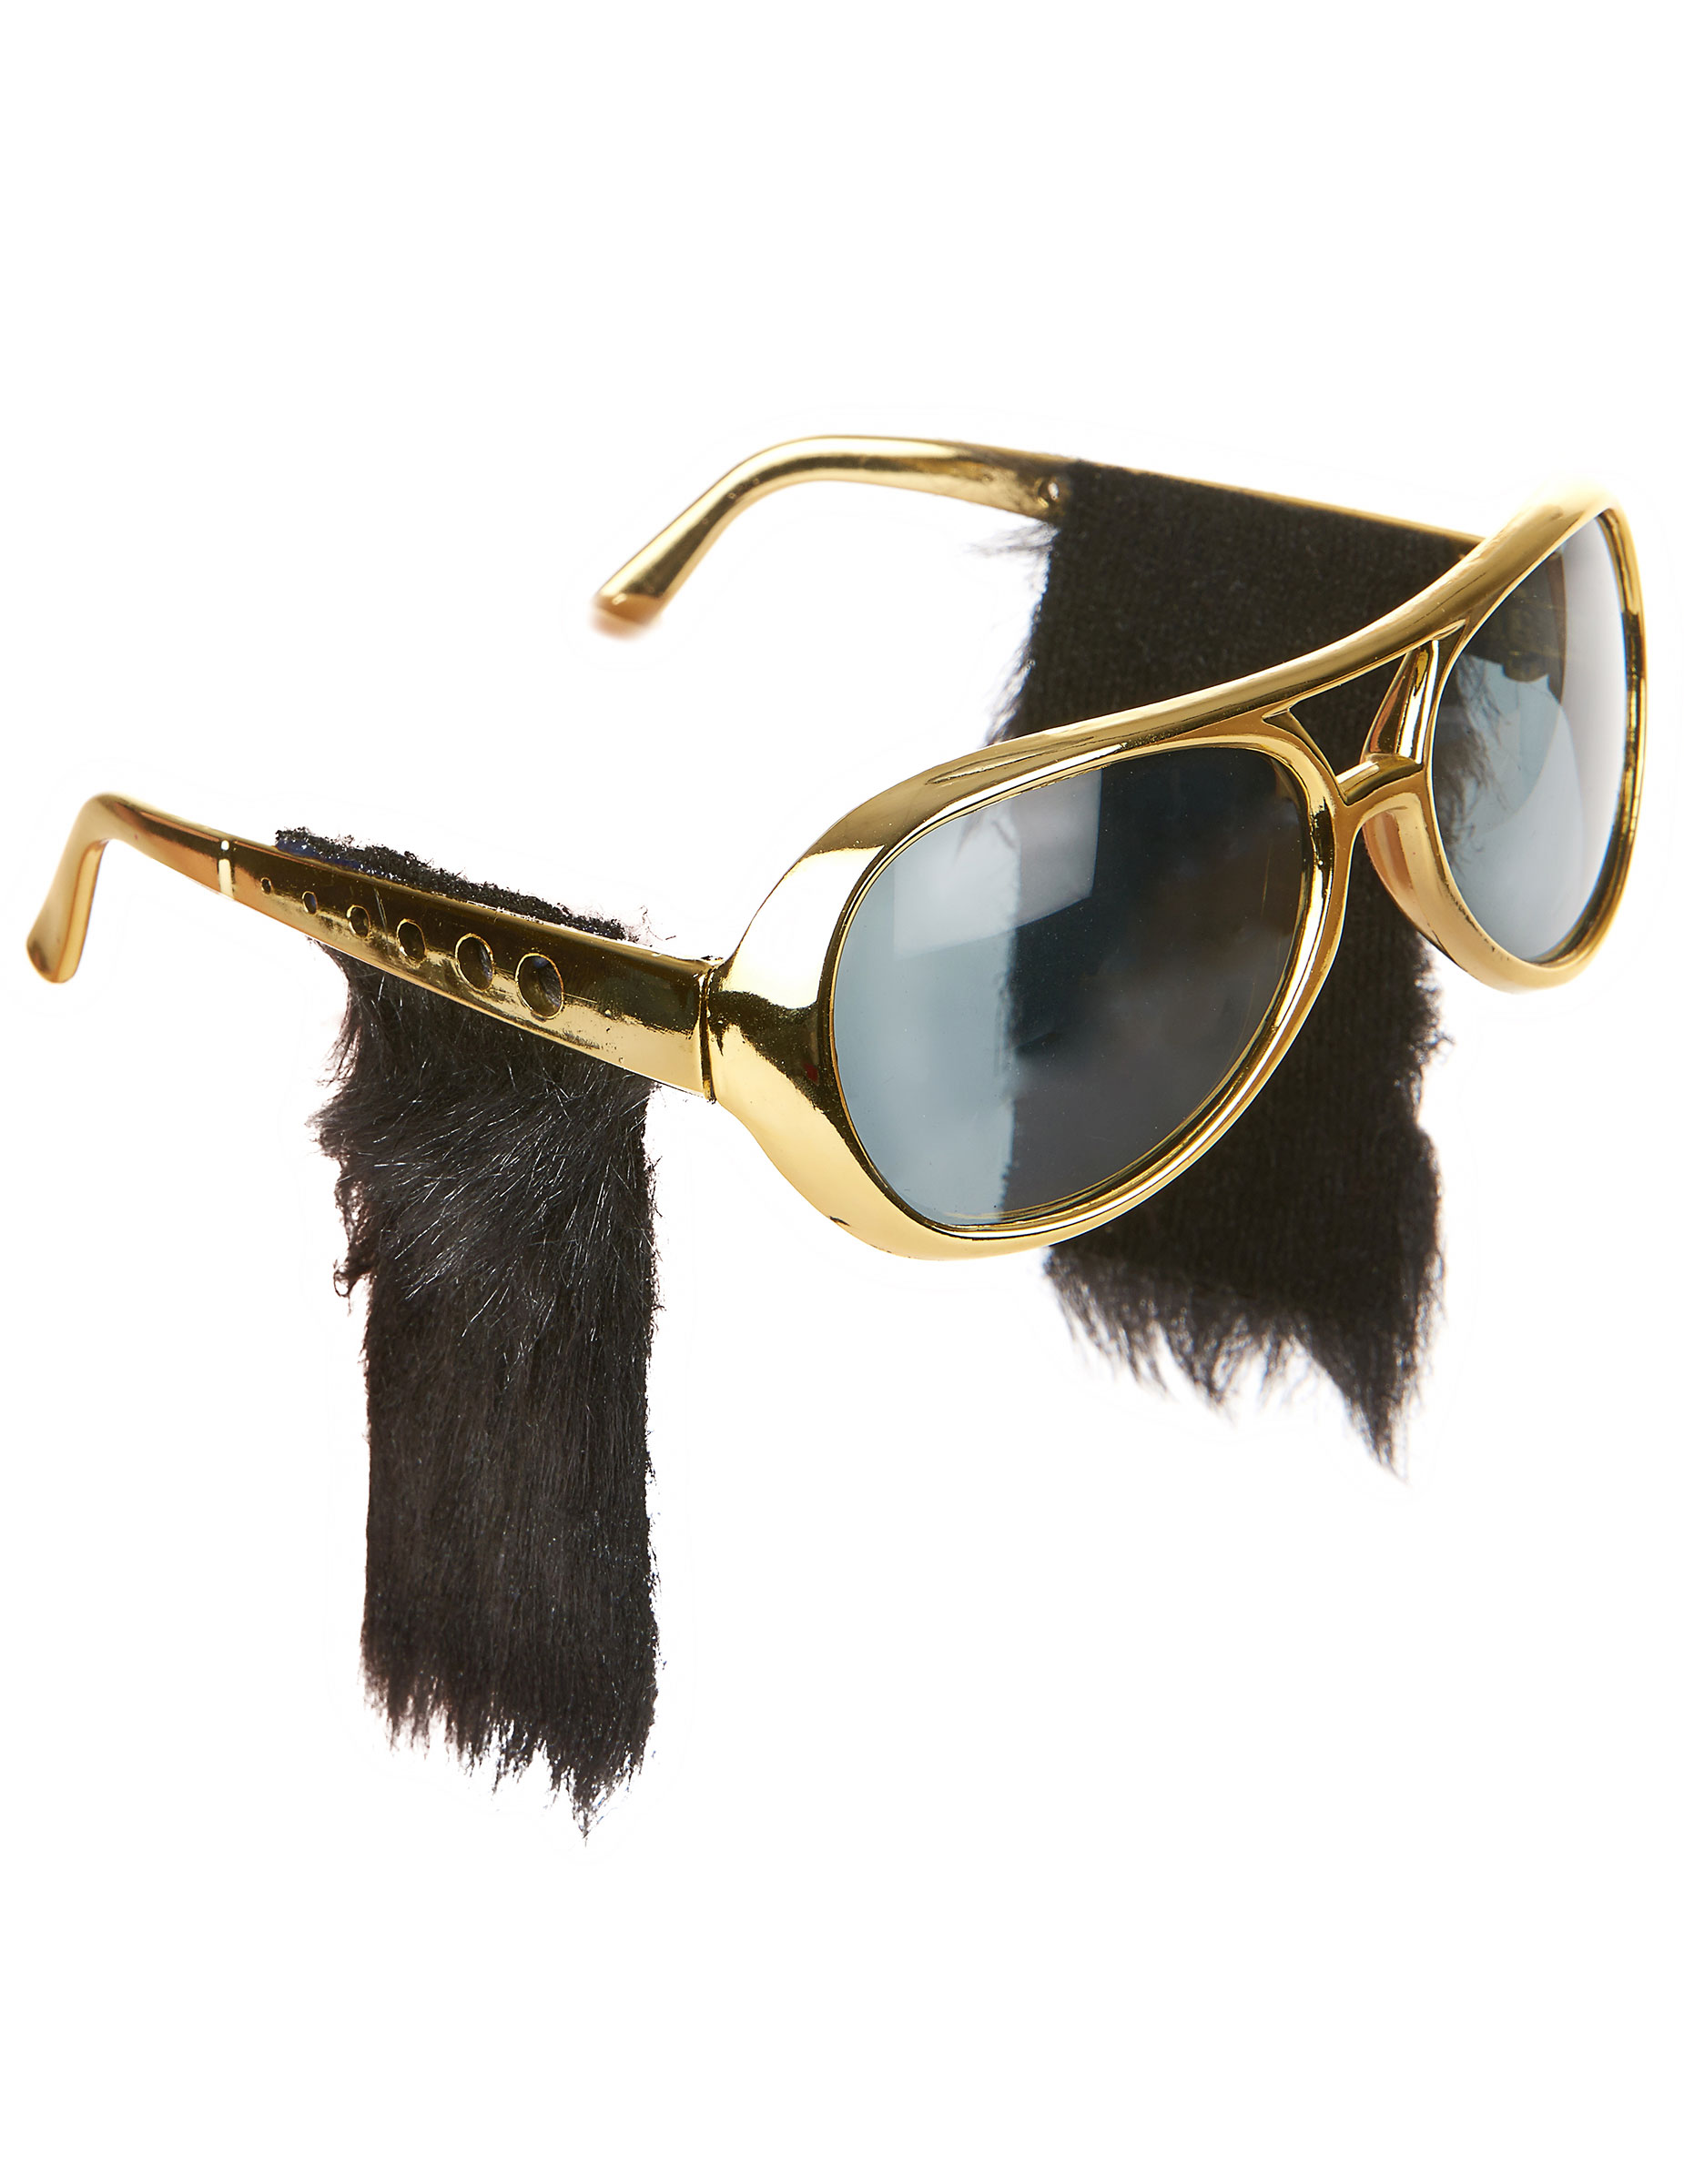 Sonnenbrille mit Koteletten - Rock 'n' Roll Kostümaccessoire gold-schwarz von PARTYPRO